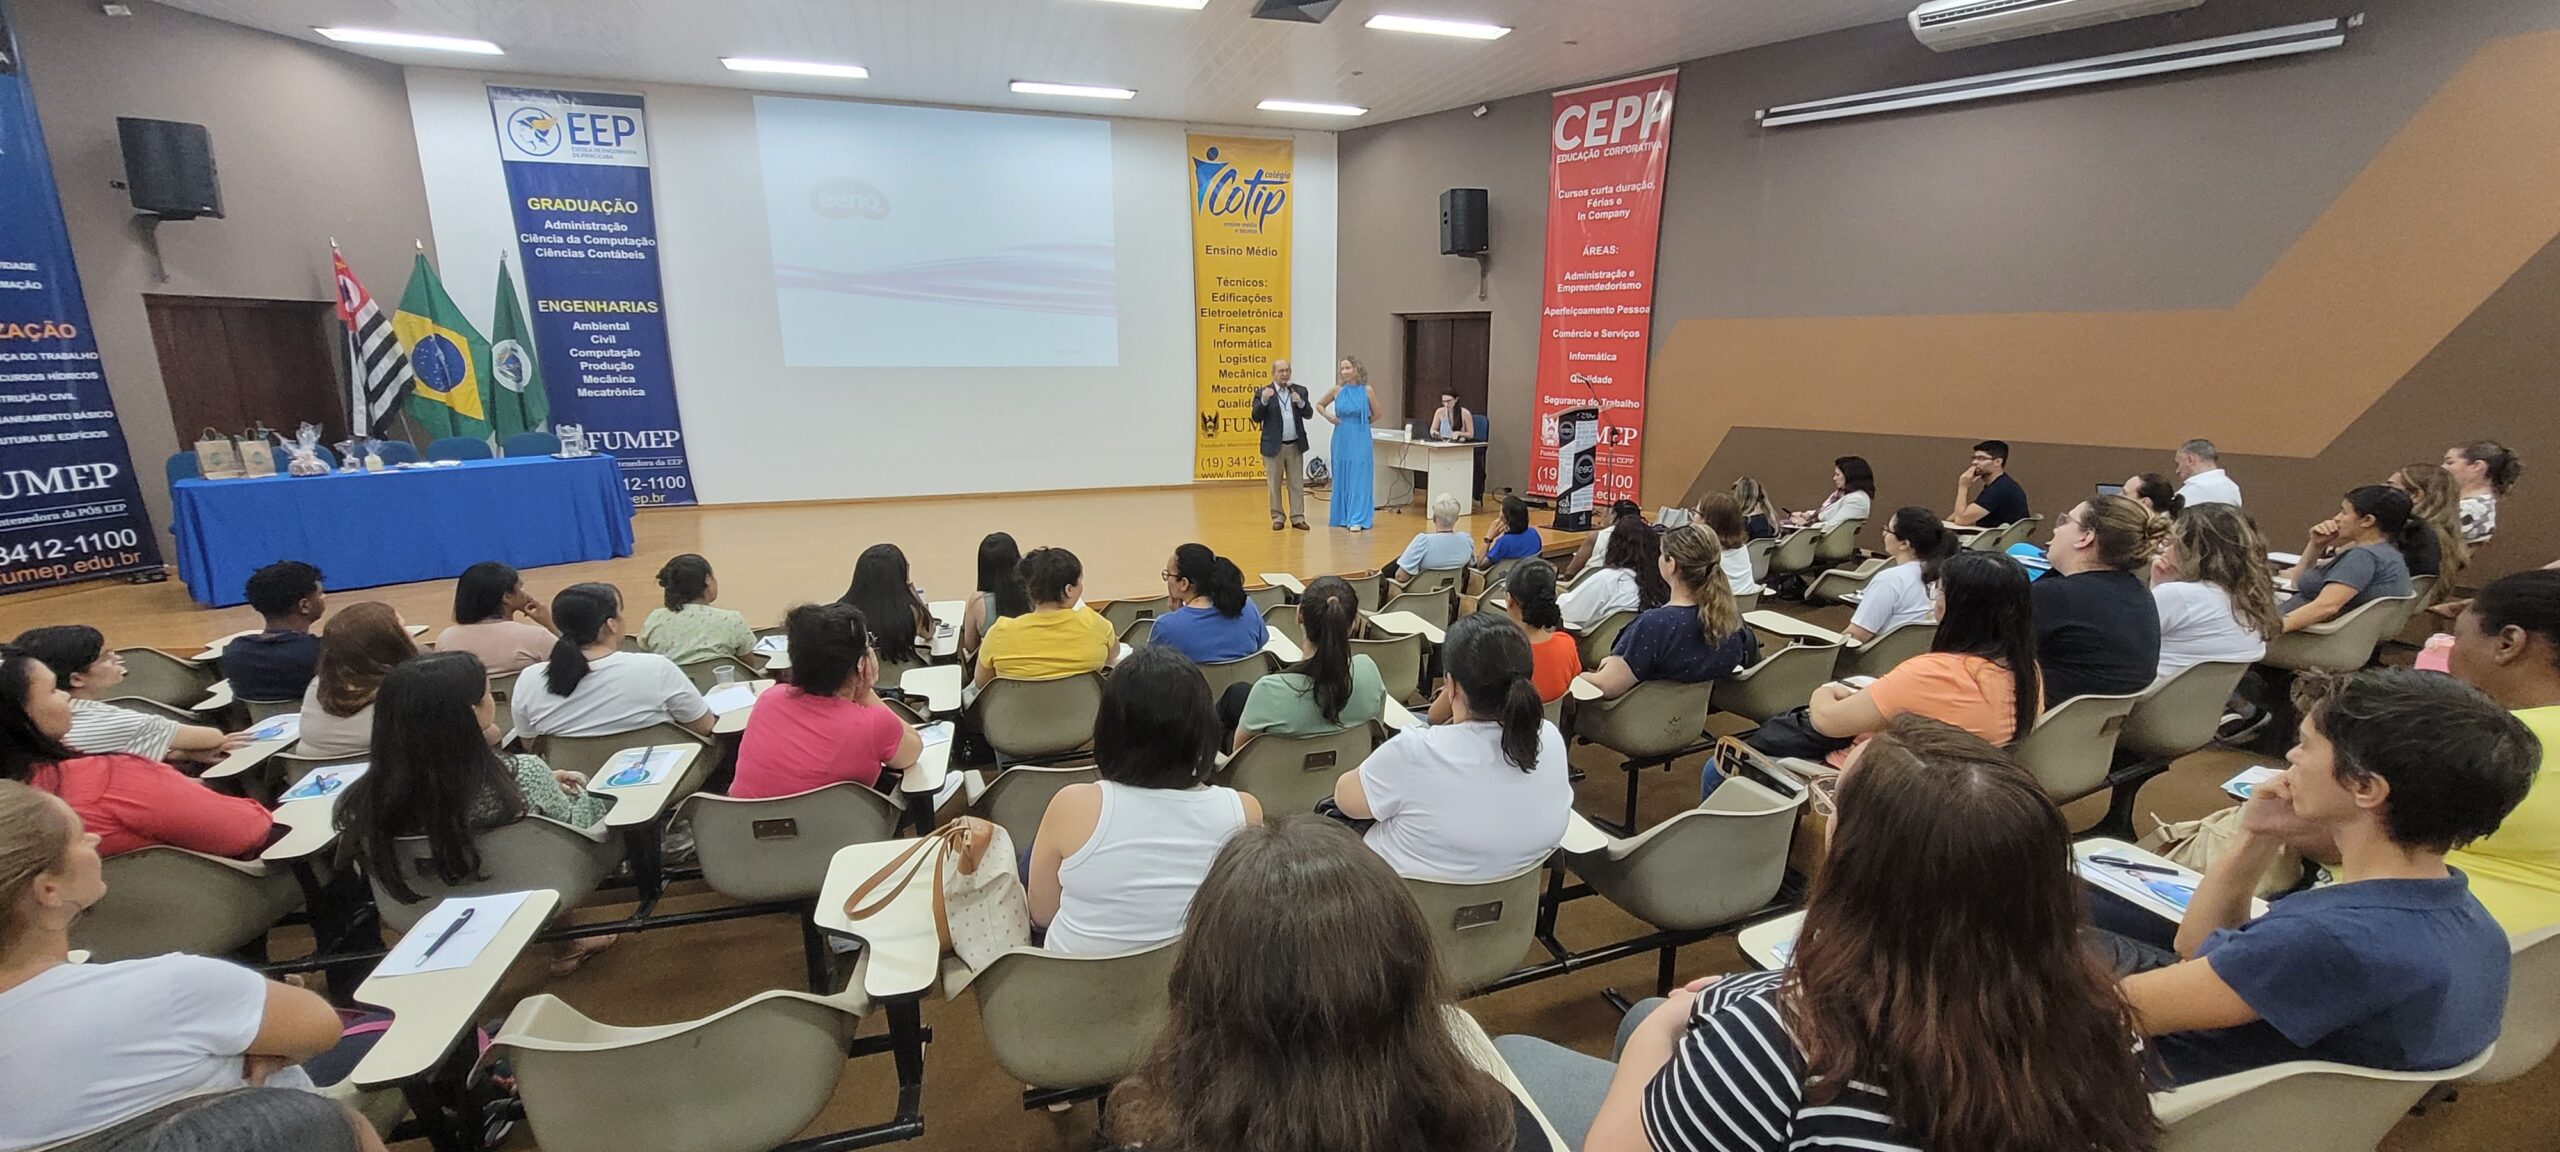 Mais de 200 pessoas participaram do ciclo de palestras realizado na Fumep